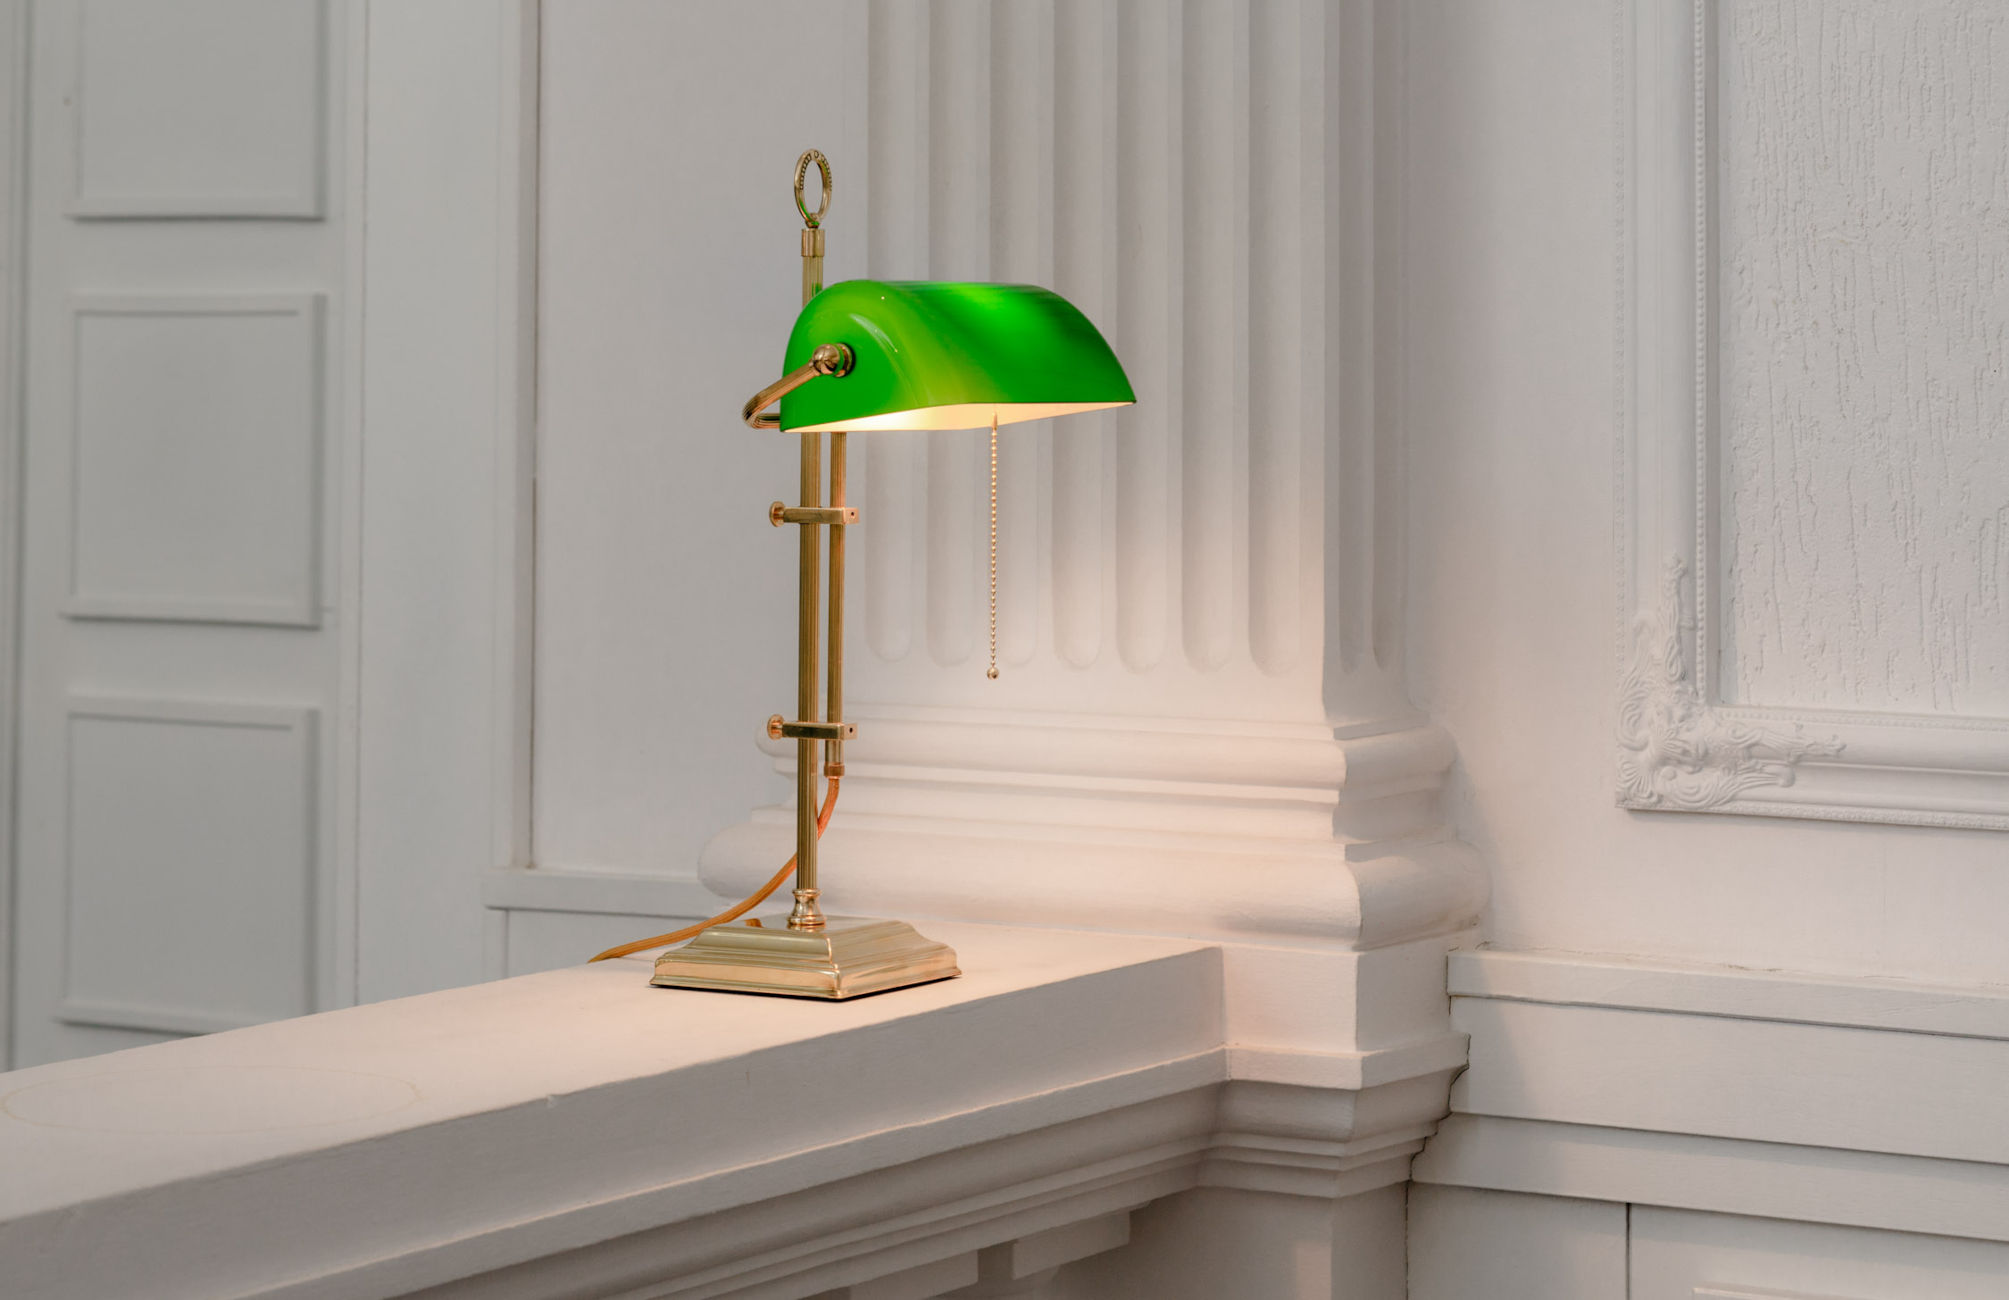 Banker’s Lamp – klassische Schreibtischleuchte mit Glasschirm: Messing poliert, unlackiert, grüner Schirm